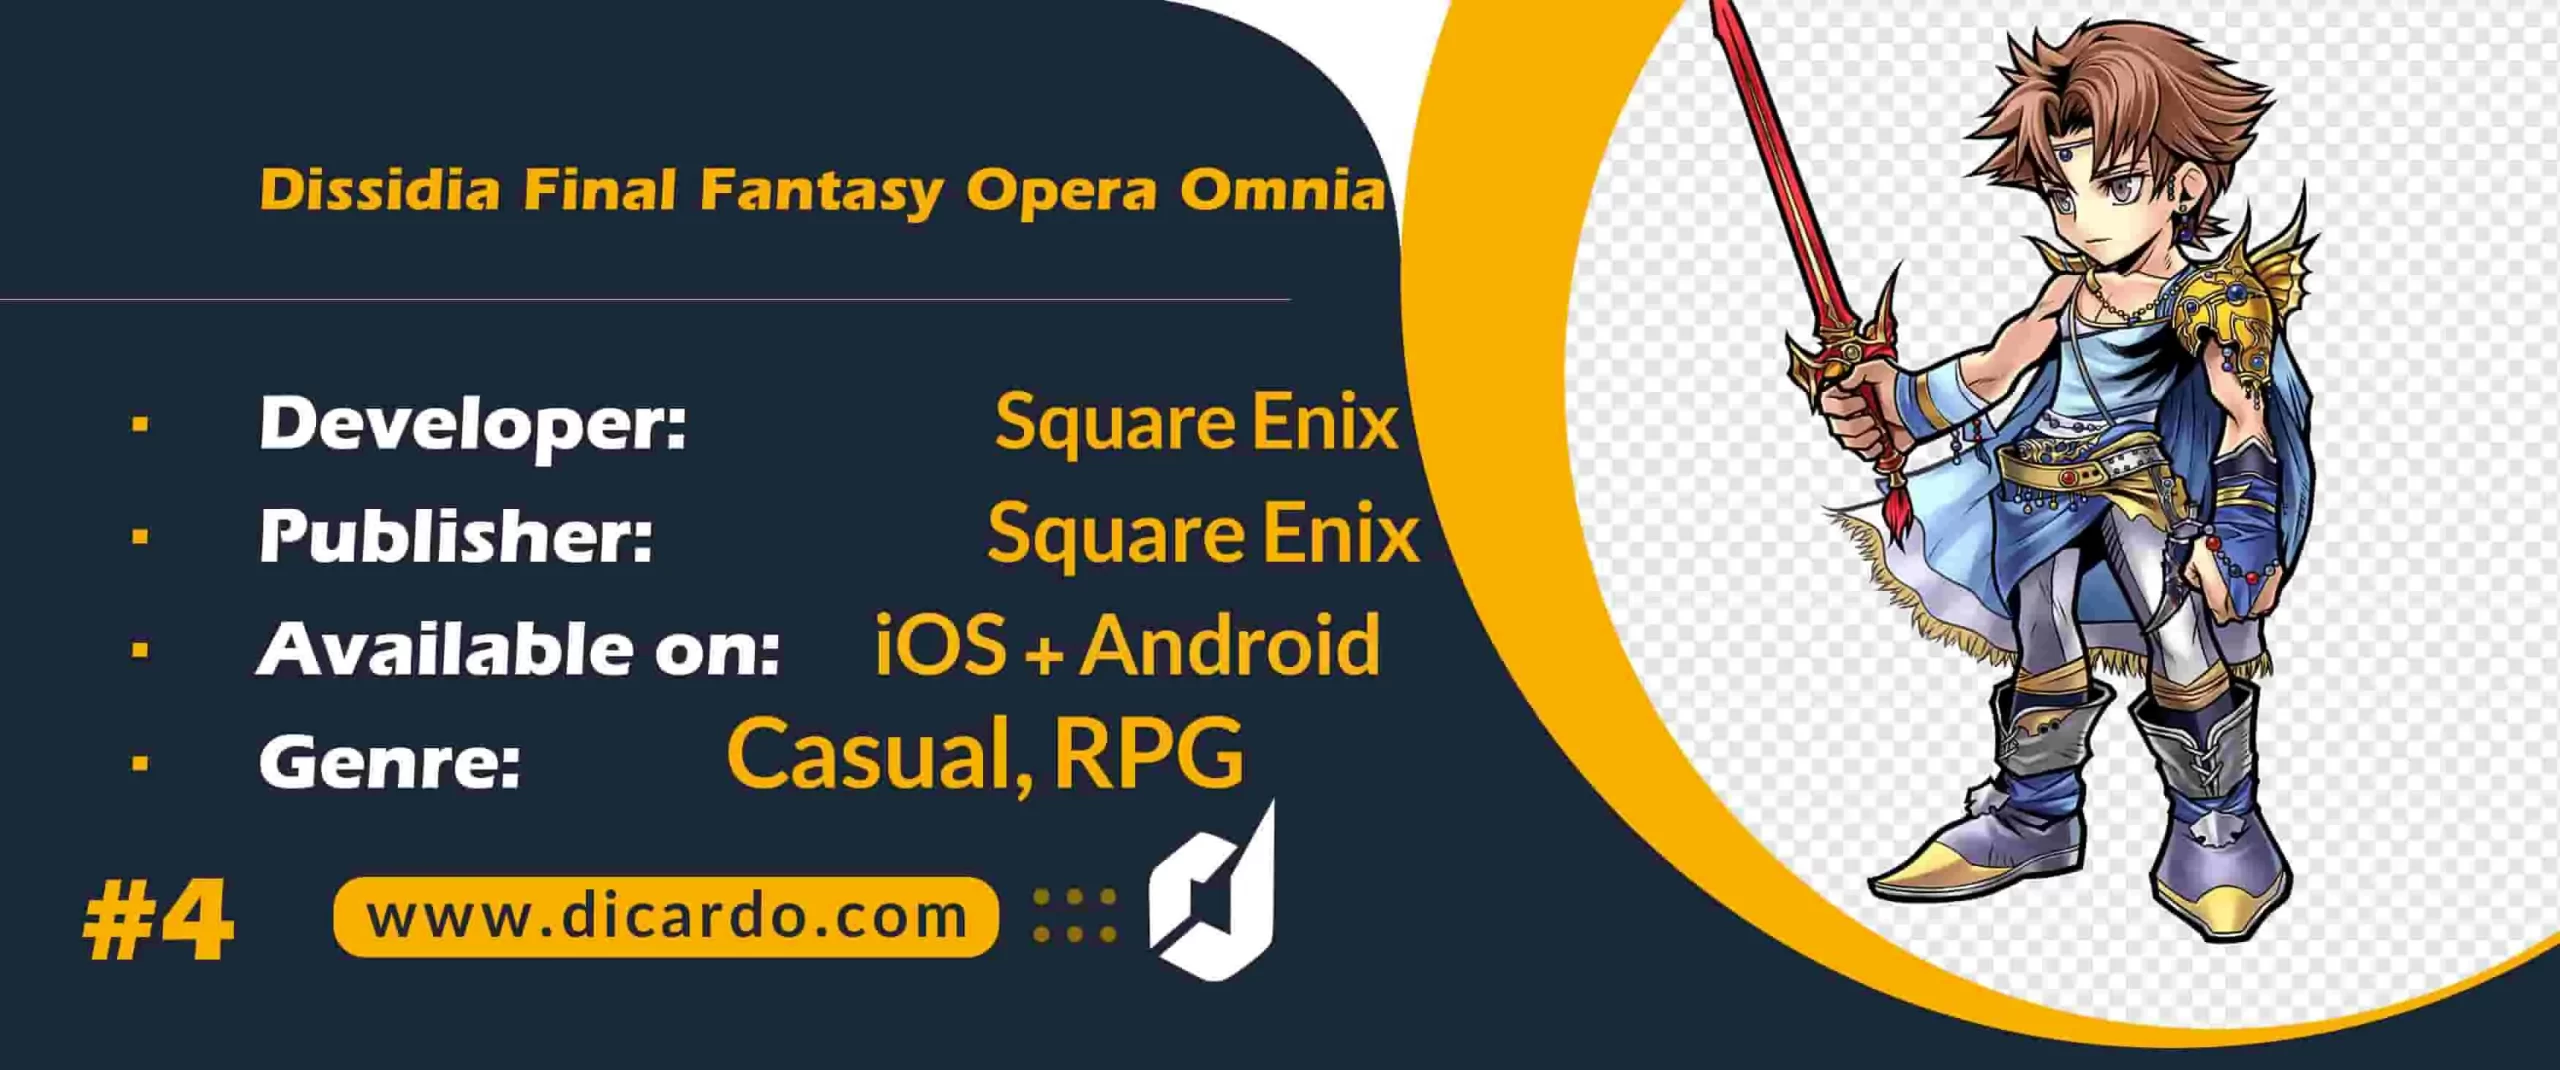 #4 دیسیدیا فاینال فانتزی اوپرا اومینیا Dissidia Final Fantasy Opera Omnia